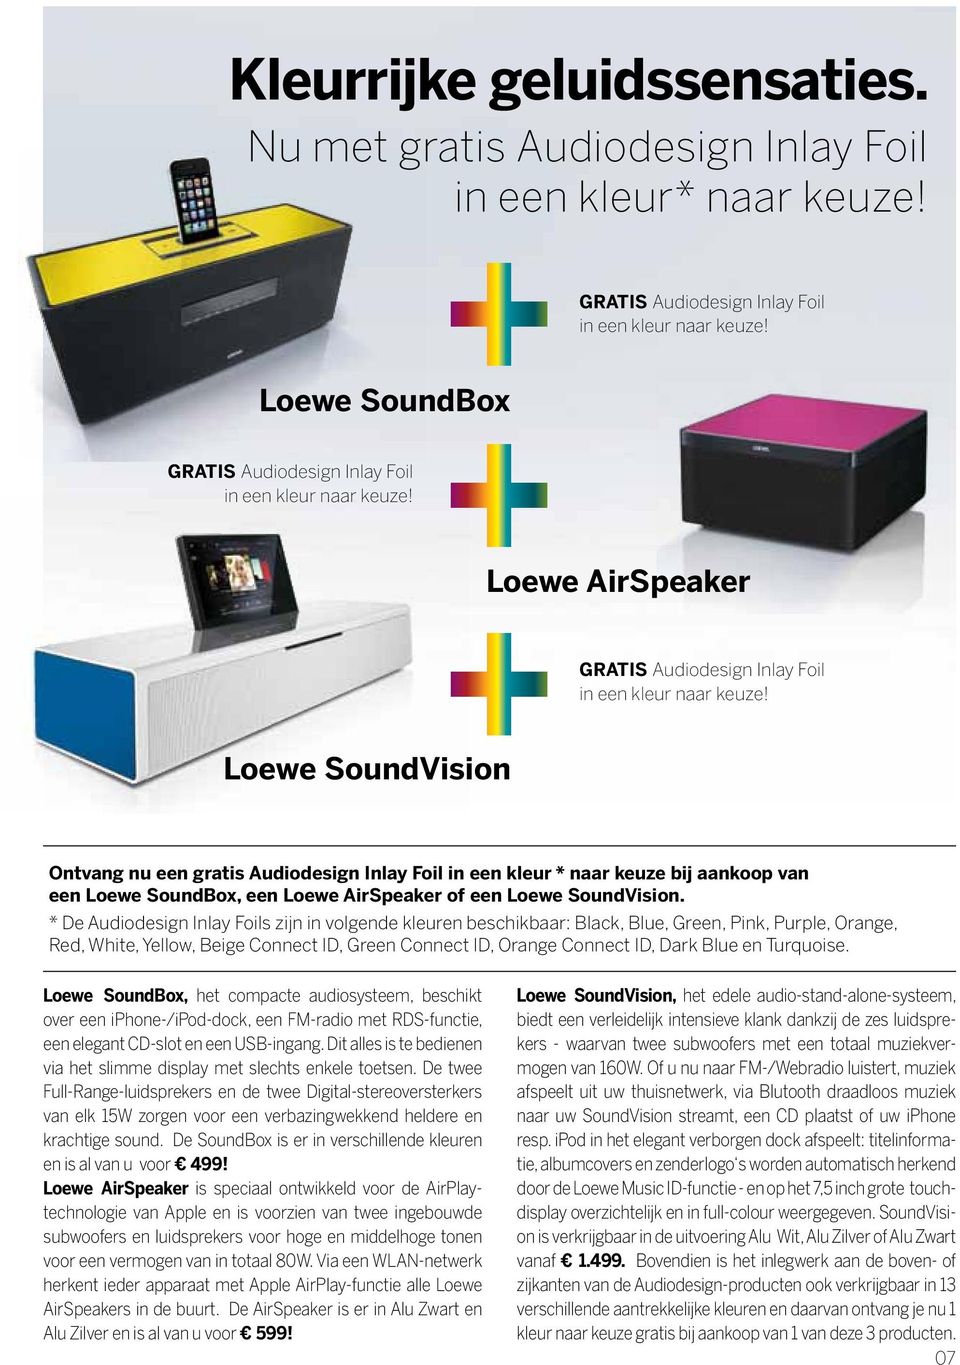 Loewe SoundVision Ontvang nu een gratis Audiodesign Inlay Foil in een kleur * naar keuze bij aankoop van een Loewe SoundBox, een Loewe AirSpeaker of een Loewe SoundVision.